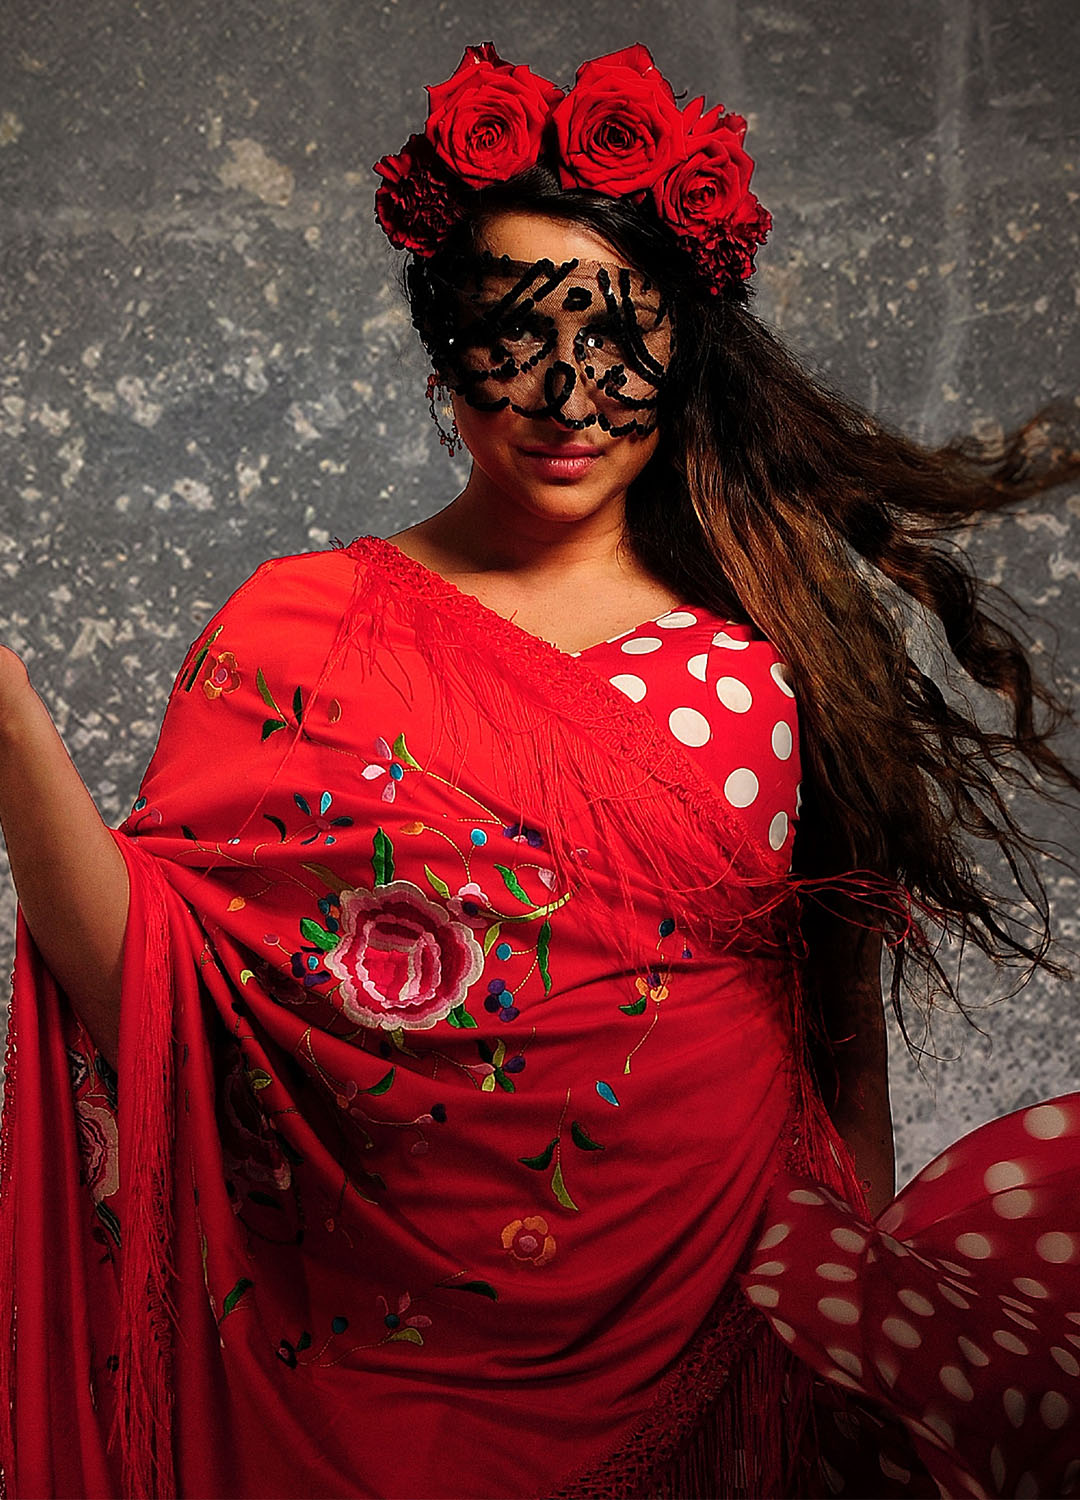 Kvinna i röd klänning med röda blommor i håret och svart spets framför ögonen. Hon håller handen i en danslikande rörelse.